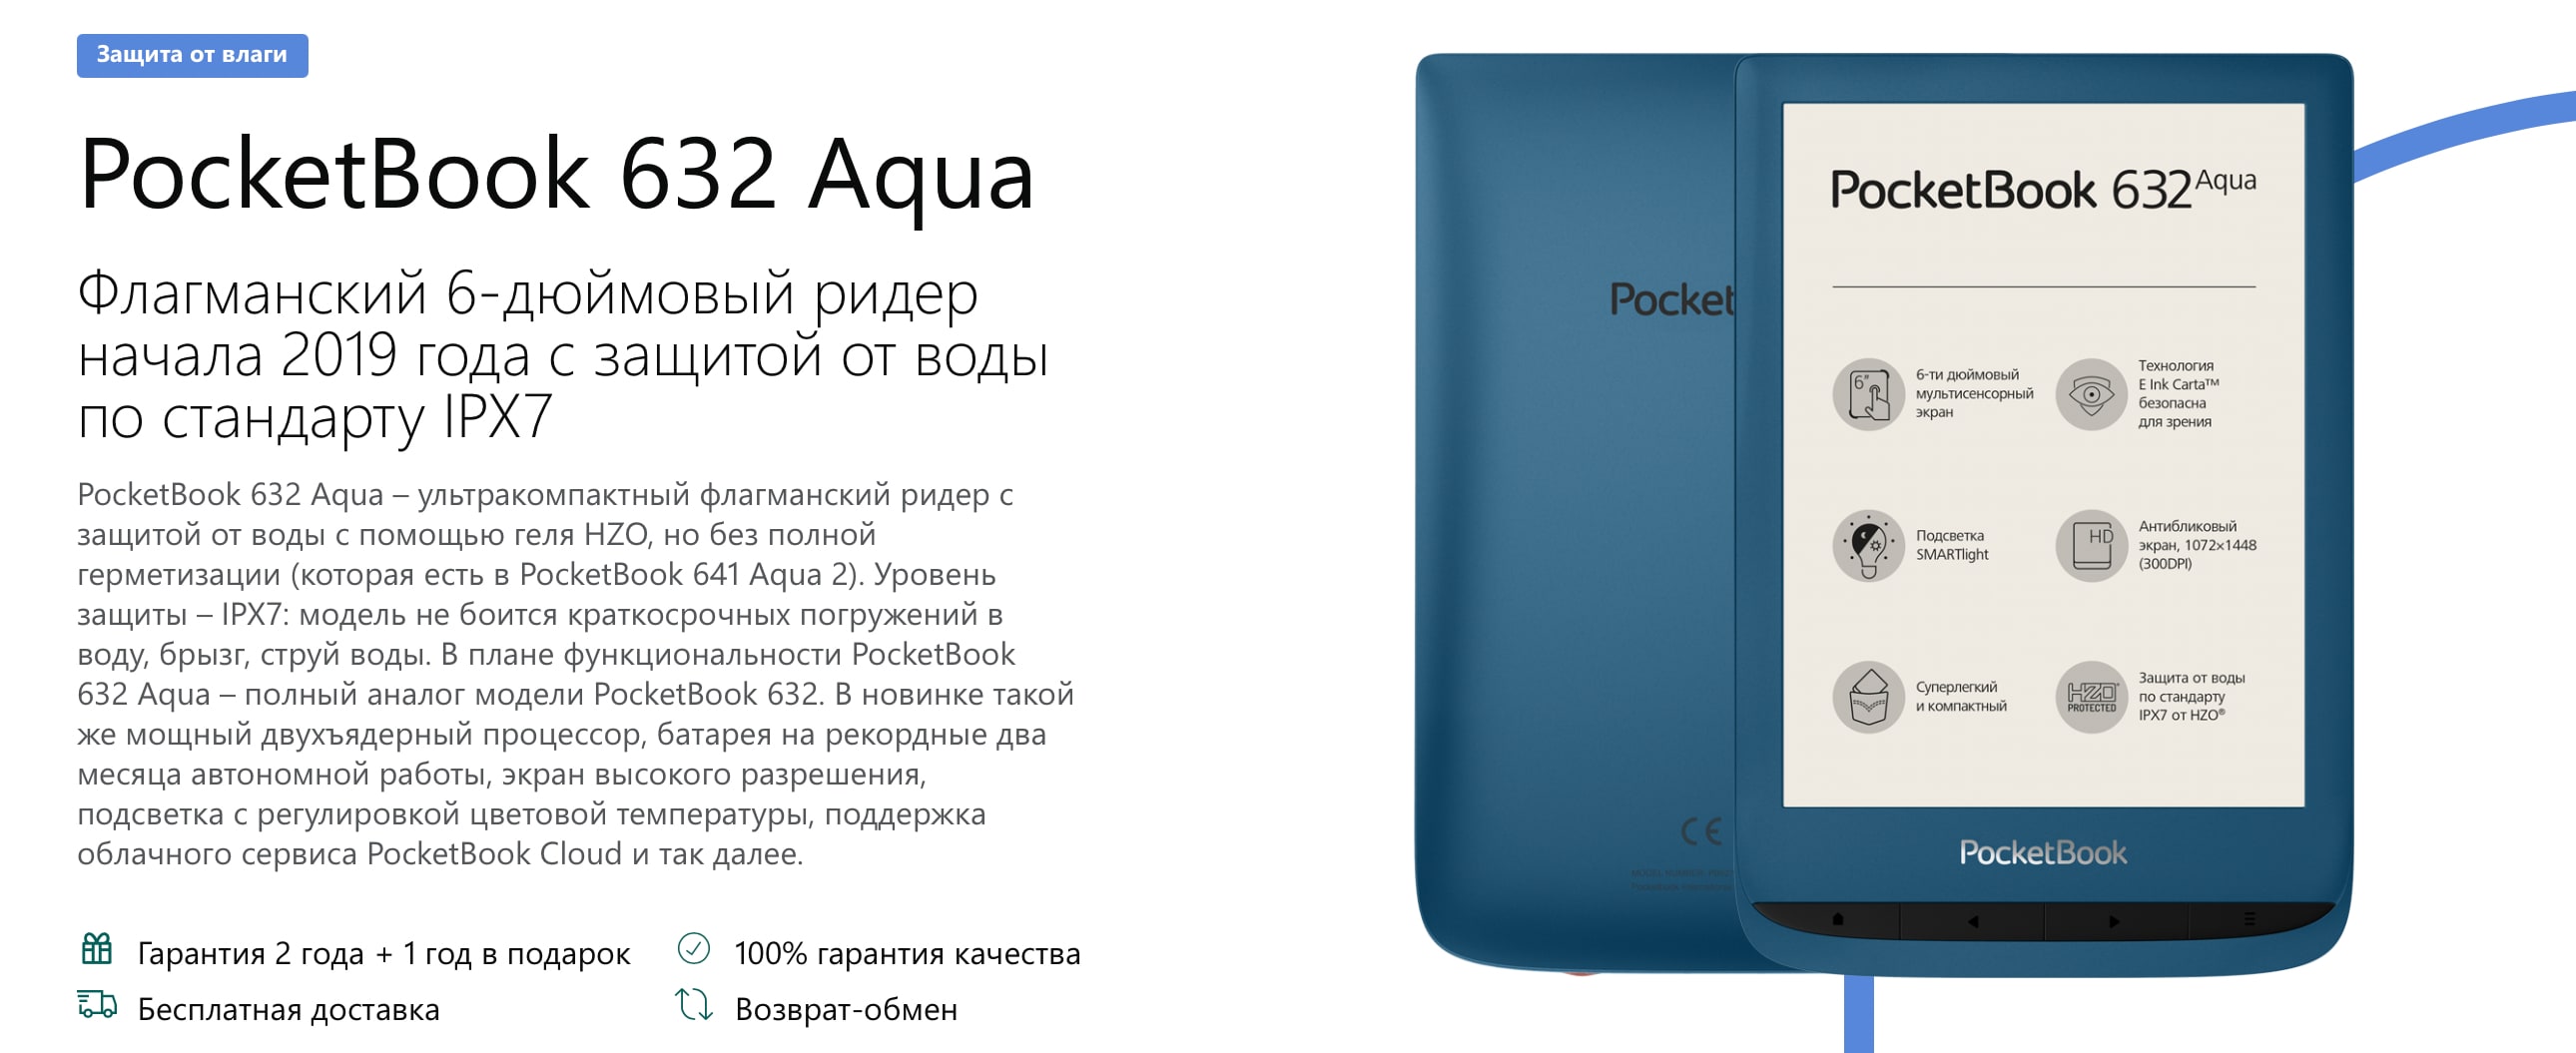 лучшее приобретение PocketBook 632 Aqua